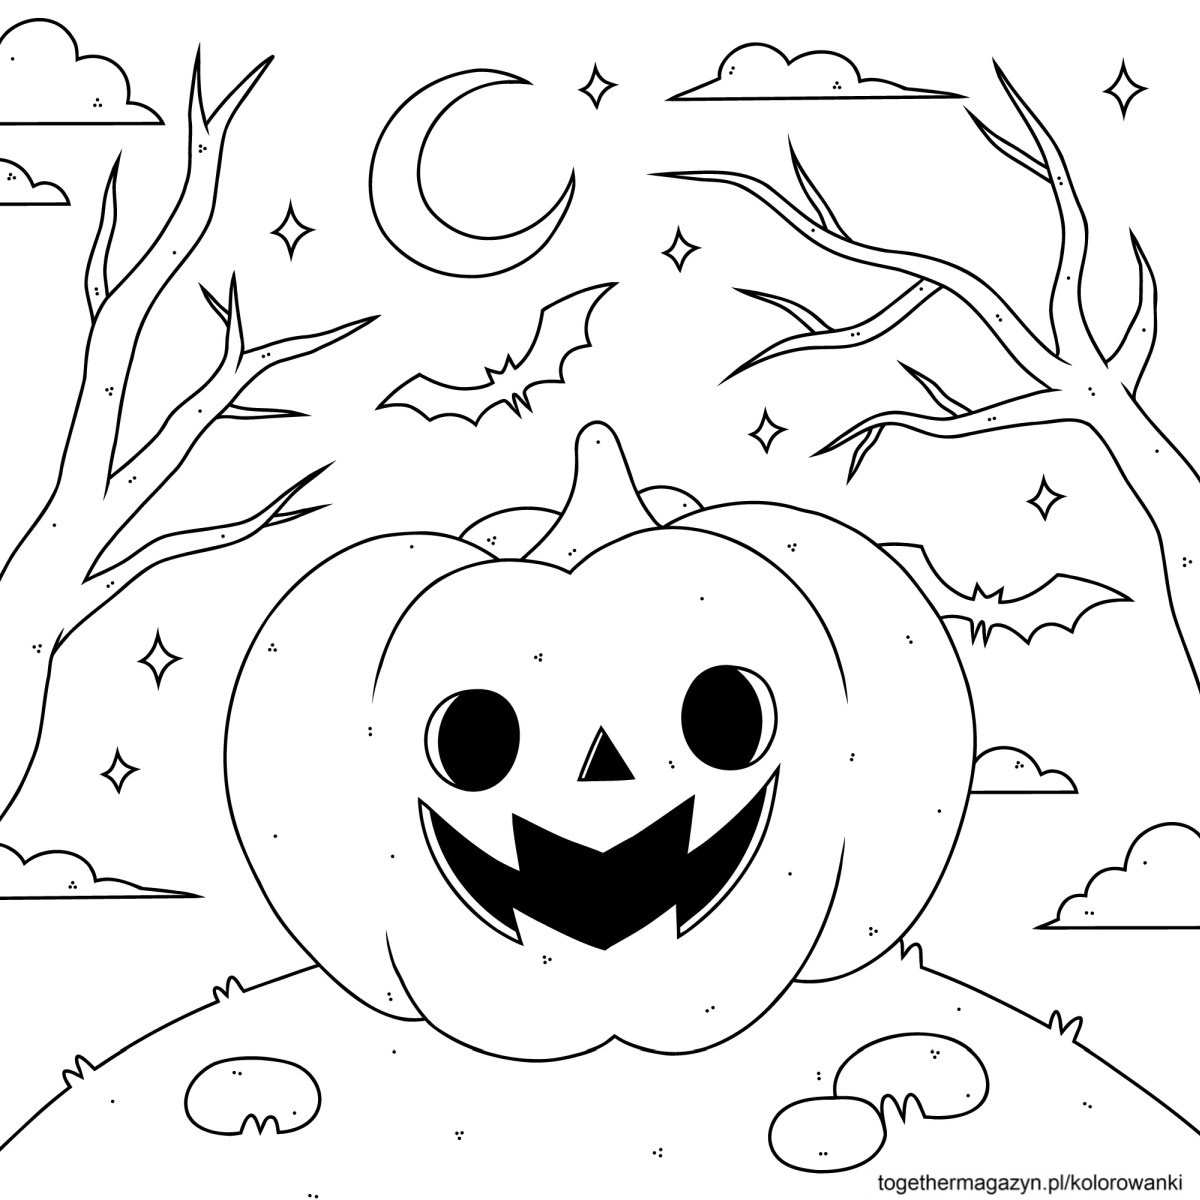 Kolorowanki Halloween - wydrukuj i pokoloruj za darmo dynię na Halloween!